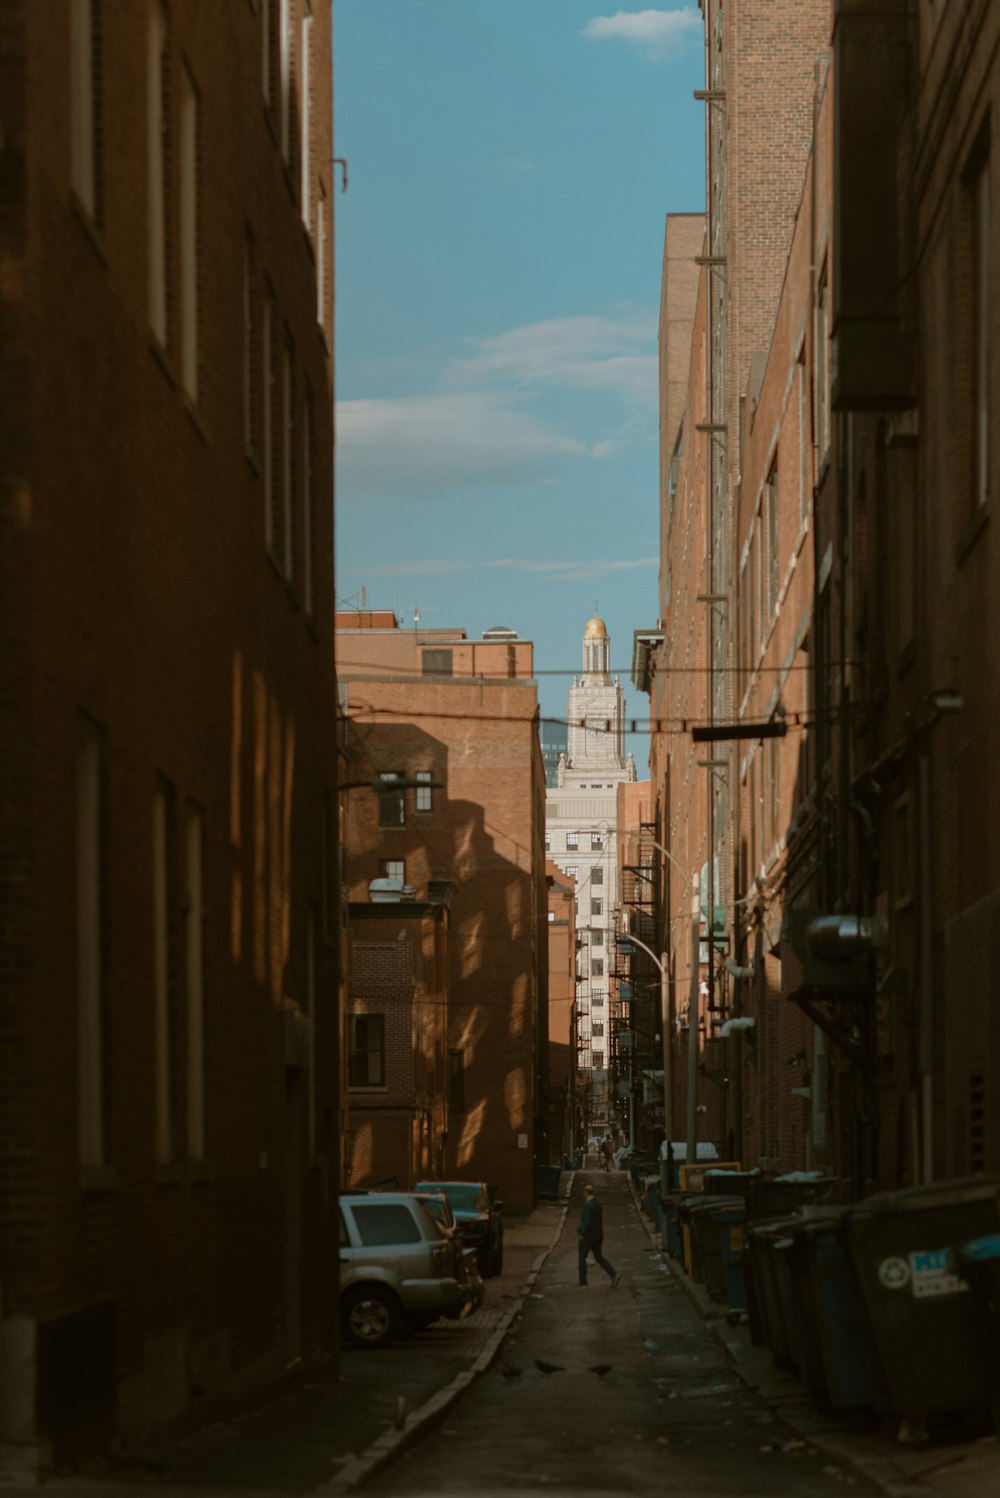 une personne marchant dans une rue étroite d’une ville